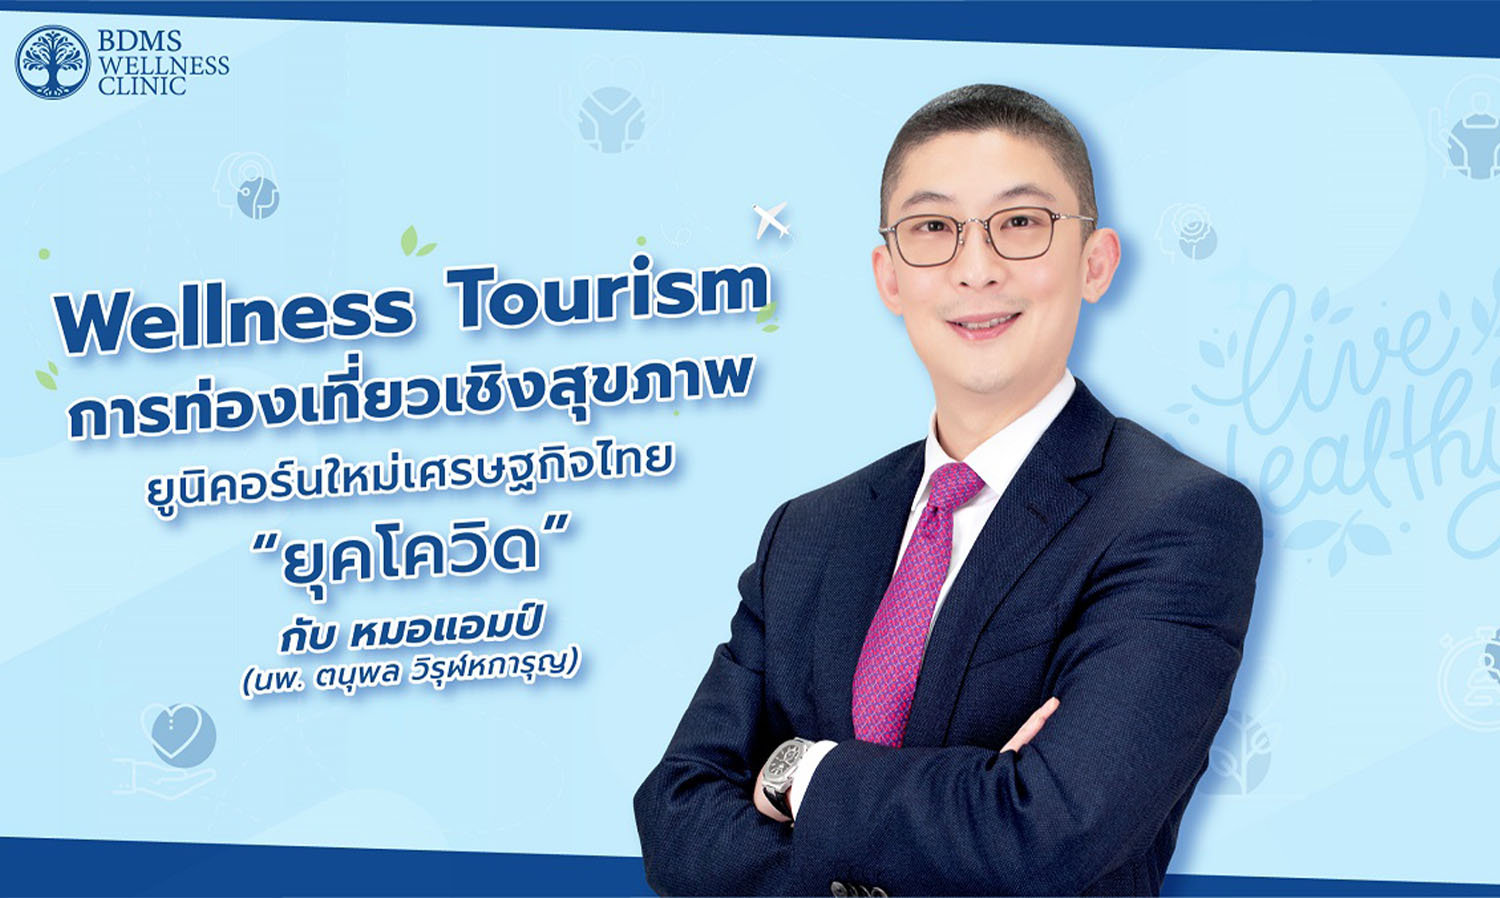 Wellness Tourism การท่องเที่ยวเชิงสุขภาพ ยูนิคอร์นใหม่เศรษฐกิจไทย “ยุคโควิด” 